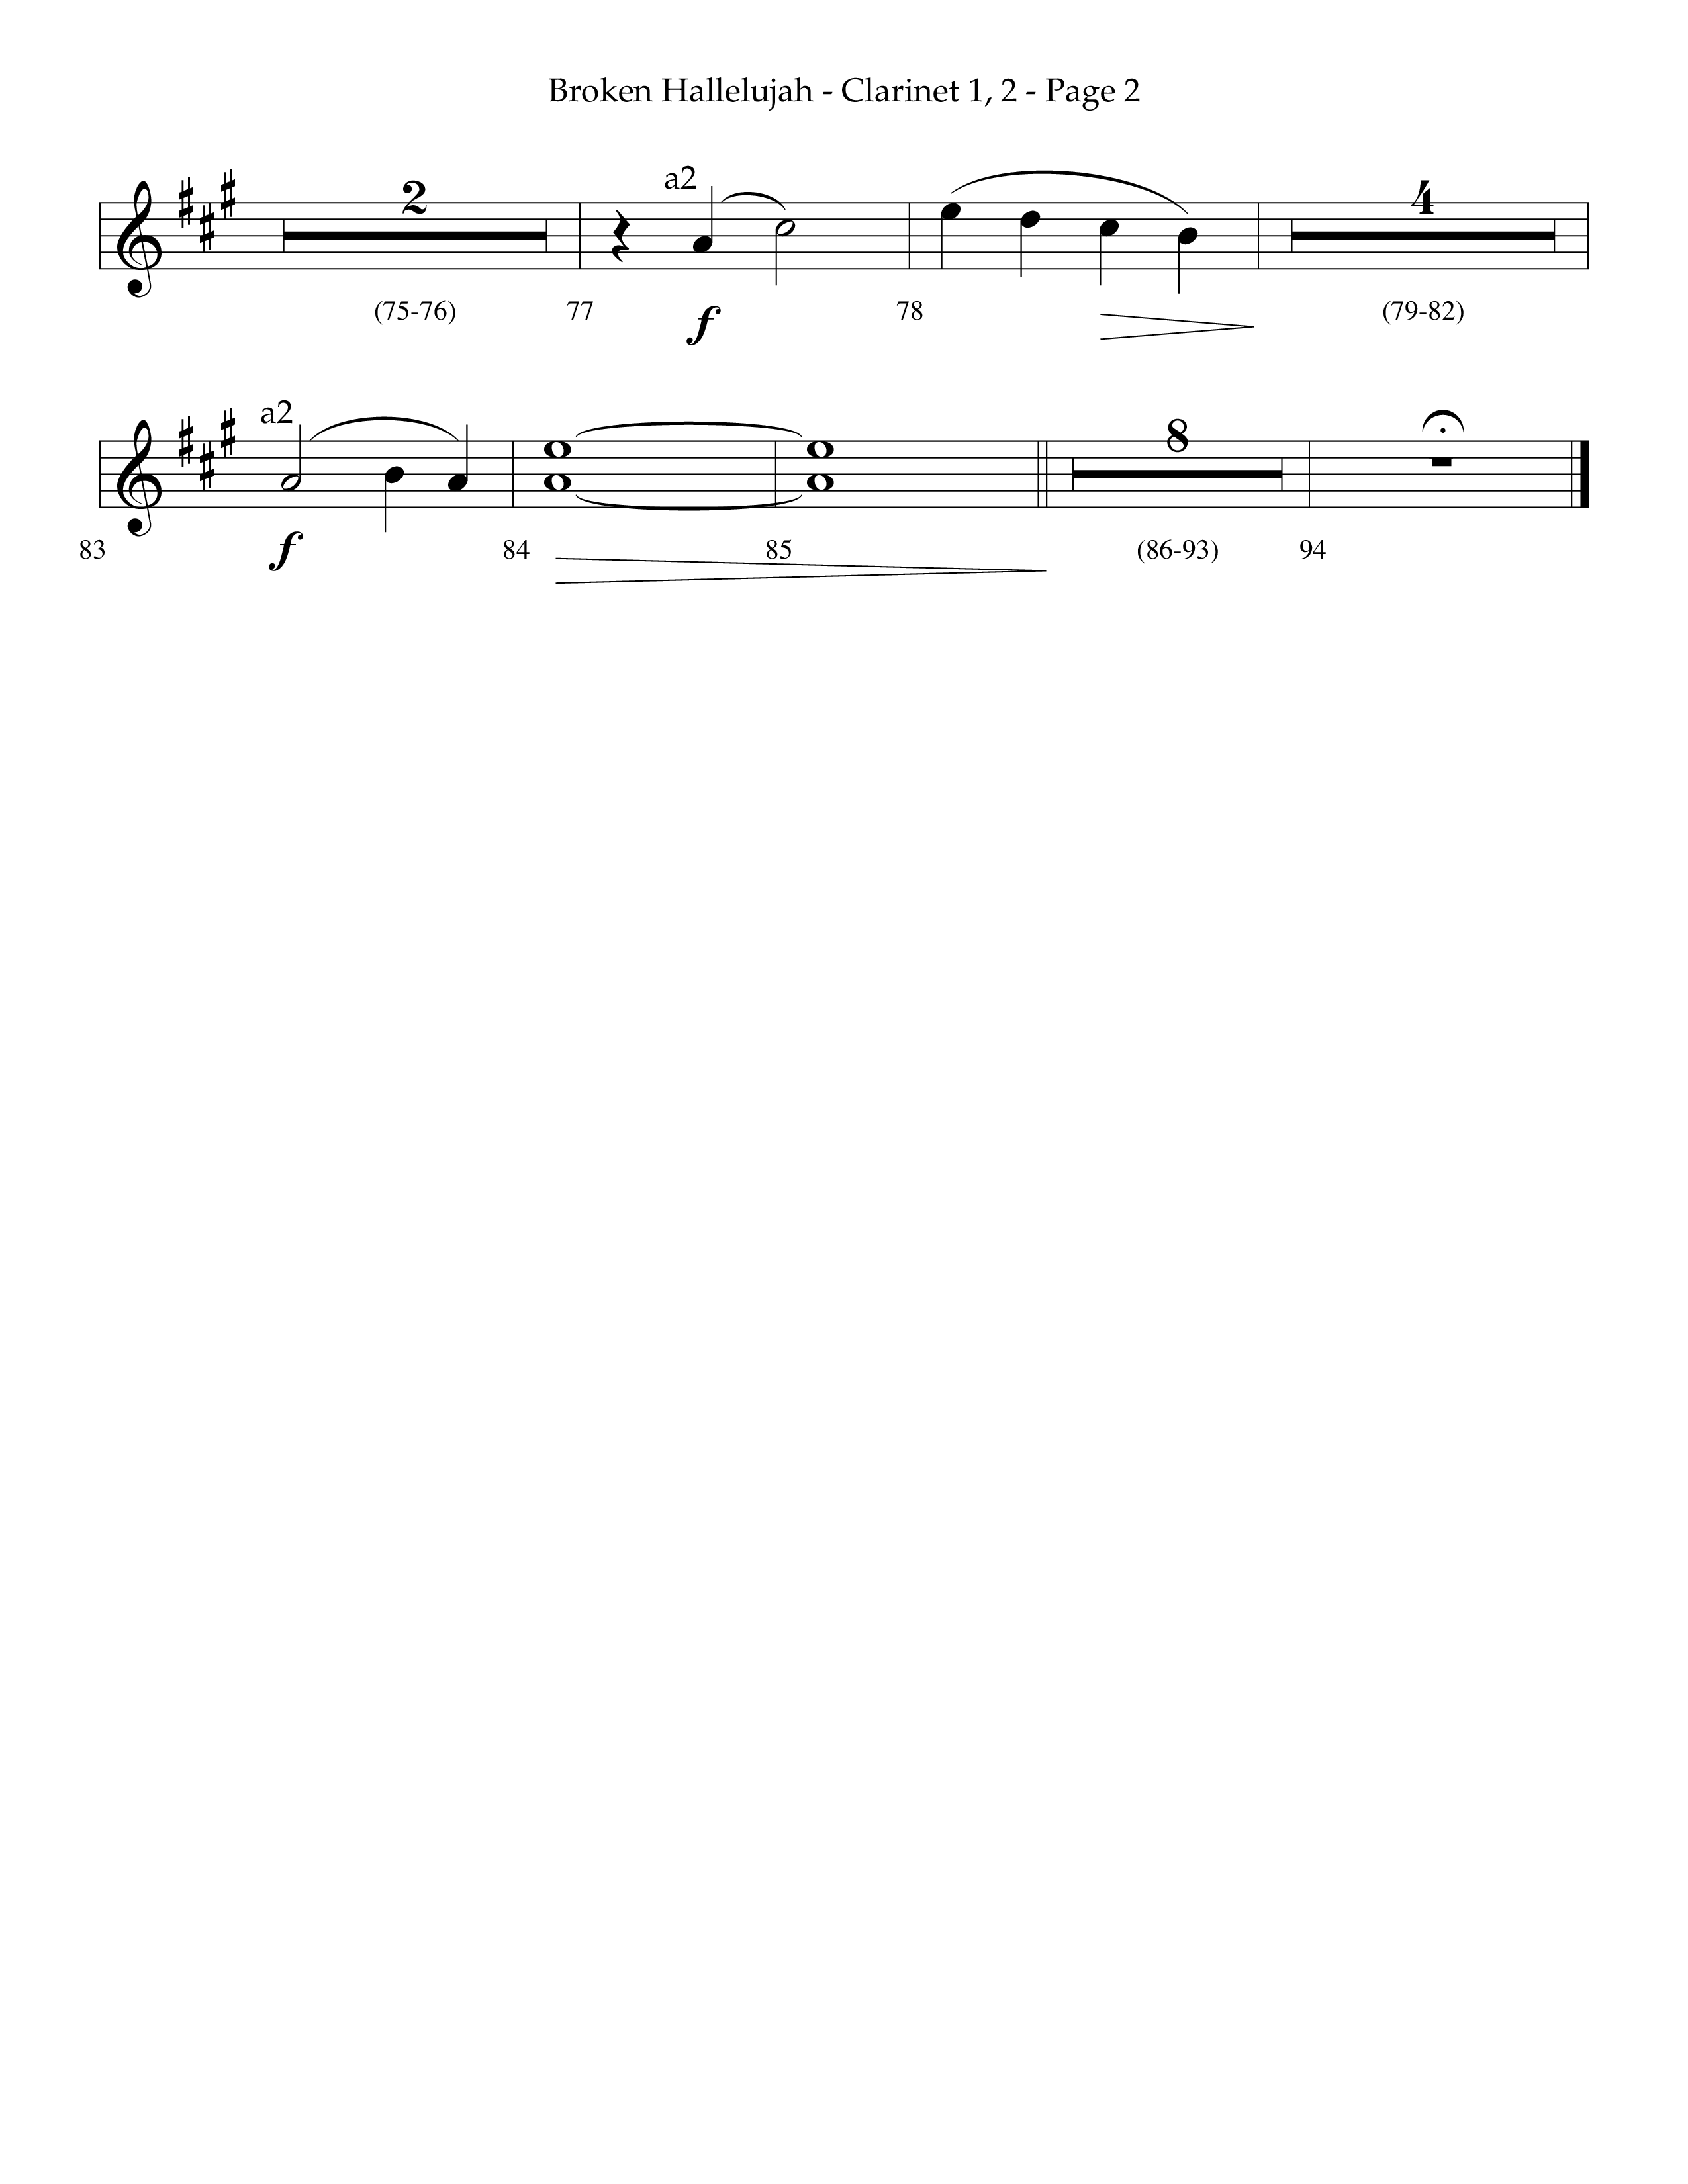 Broken Hallelujah (Choral Anthem SATB) Clarinet 1/2 (Lifeway Choral / Arr. Phillip Keveren)